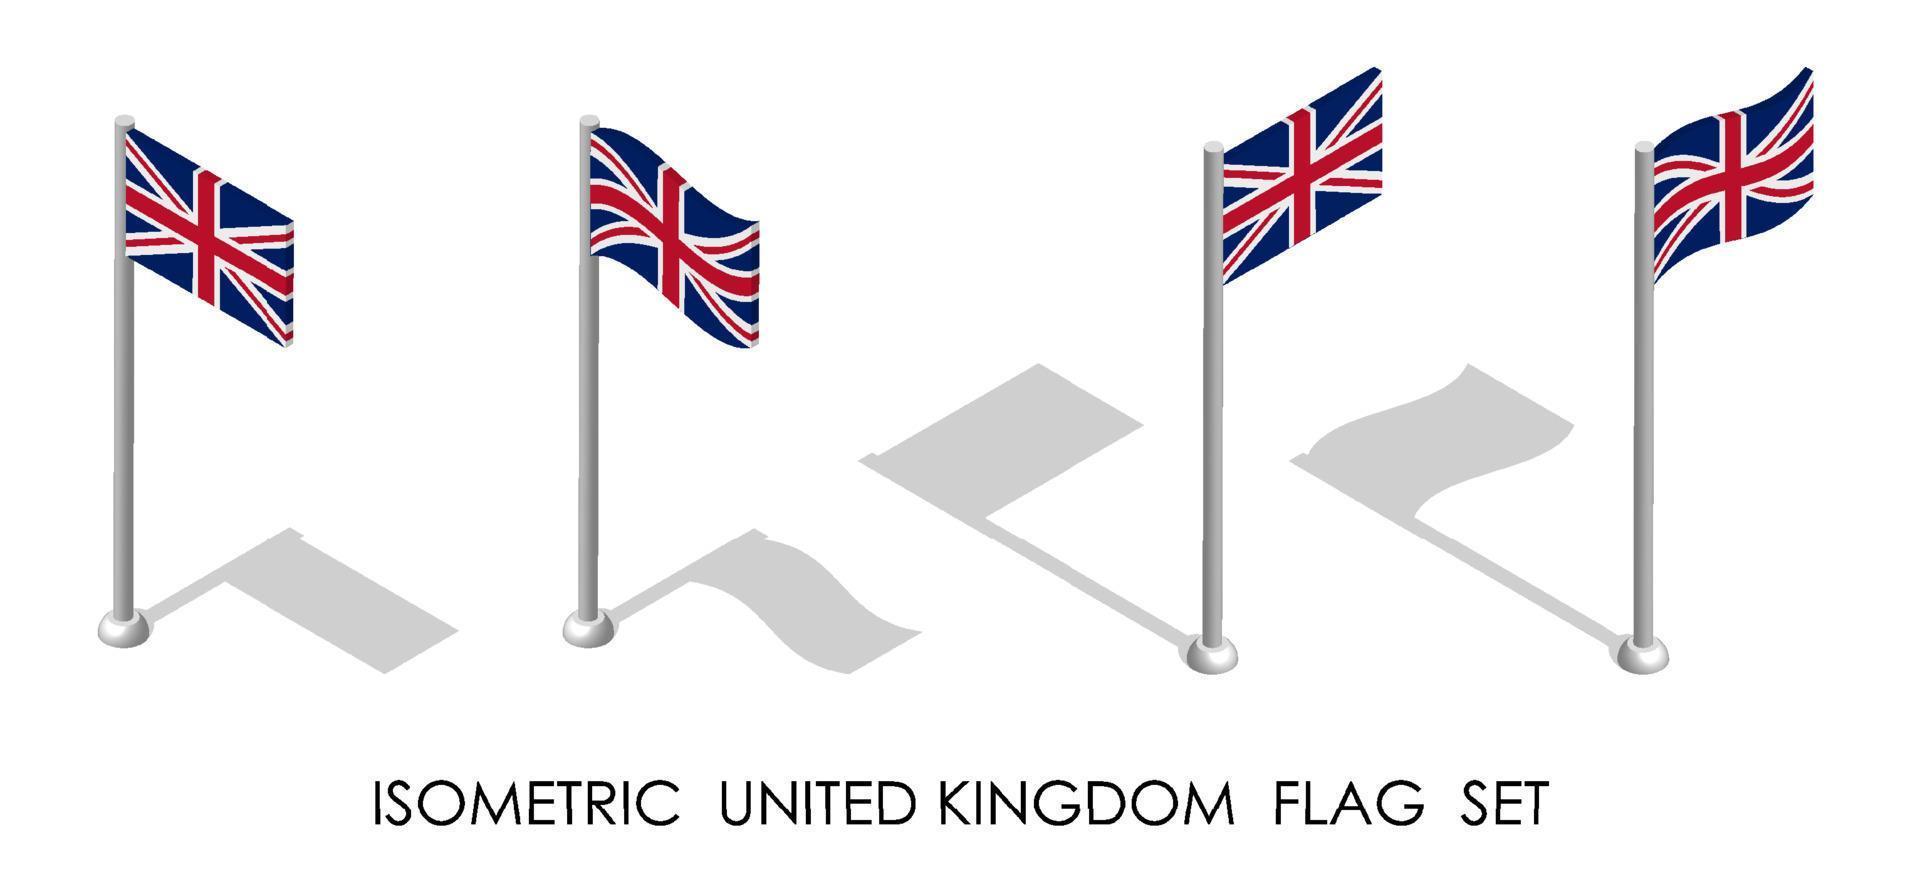 bandiera isometrica del regno unito di gran bretagna e irlanda del nord in posizione statica e in movimento sull'asta della bandiera. vettore 3d